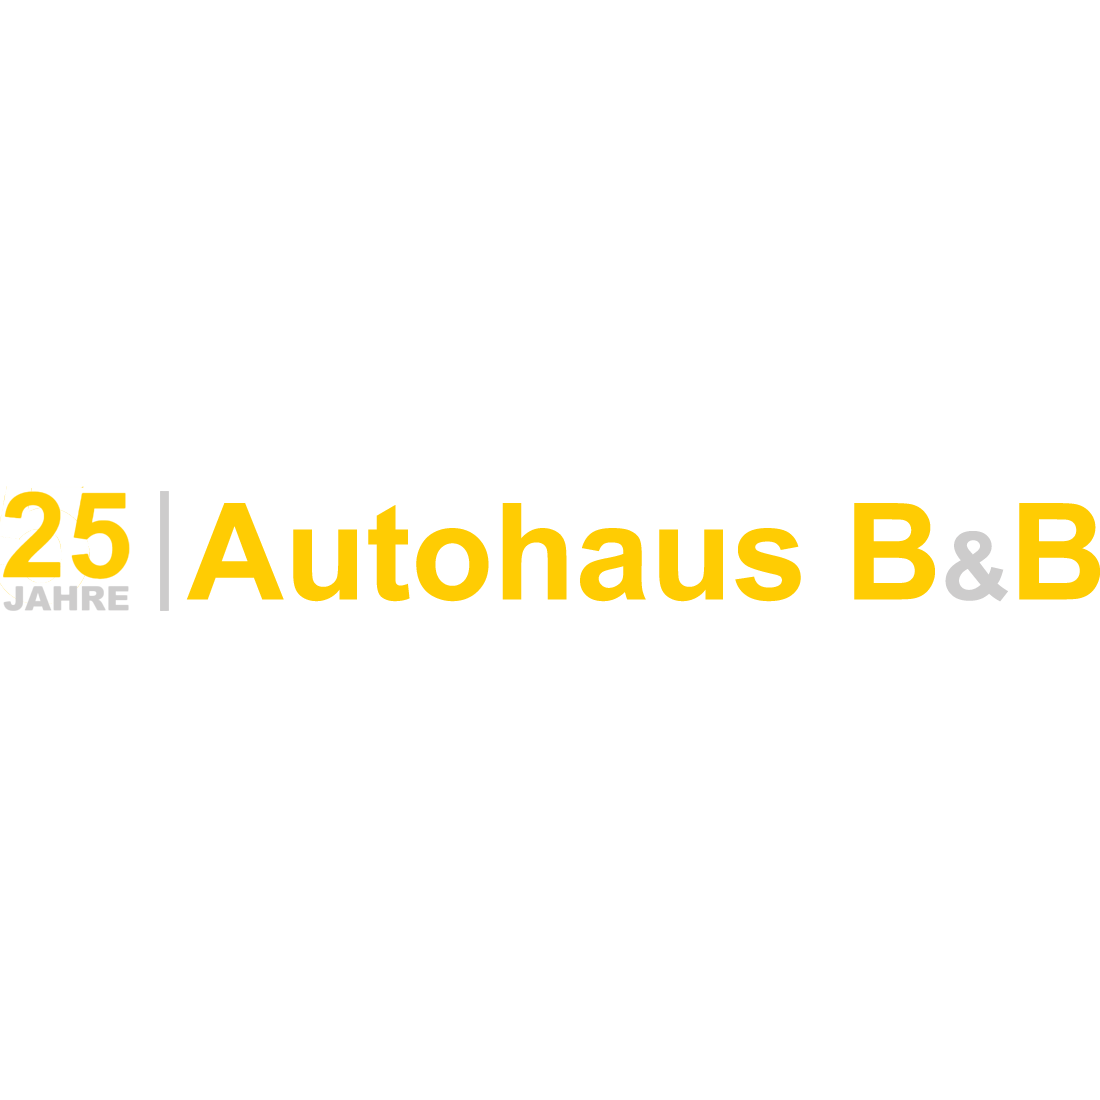 Autohaus B&B GmbH in Essen - Logo